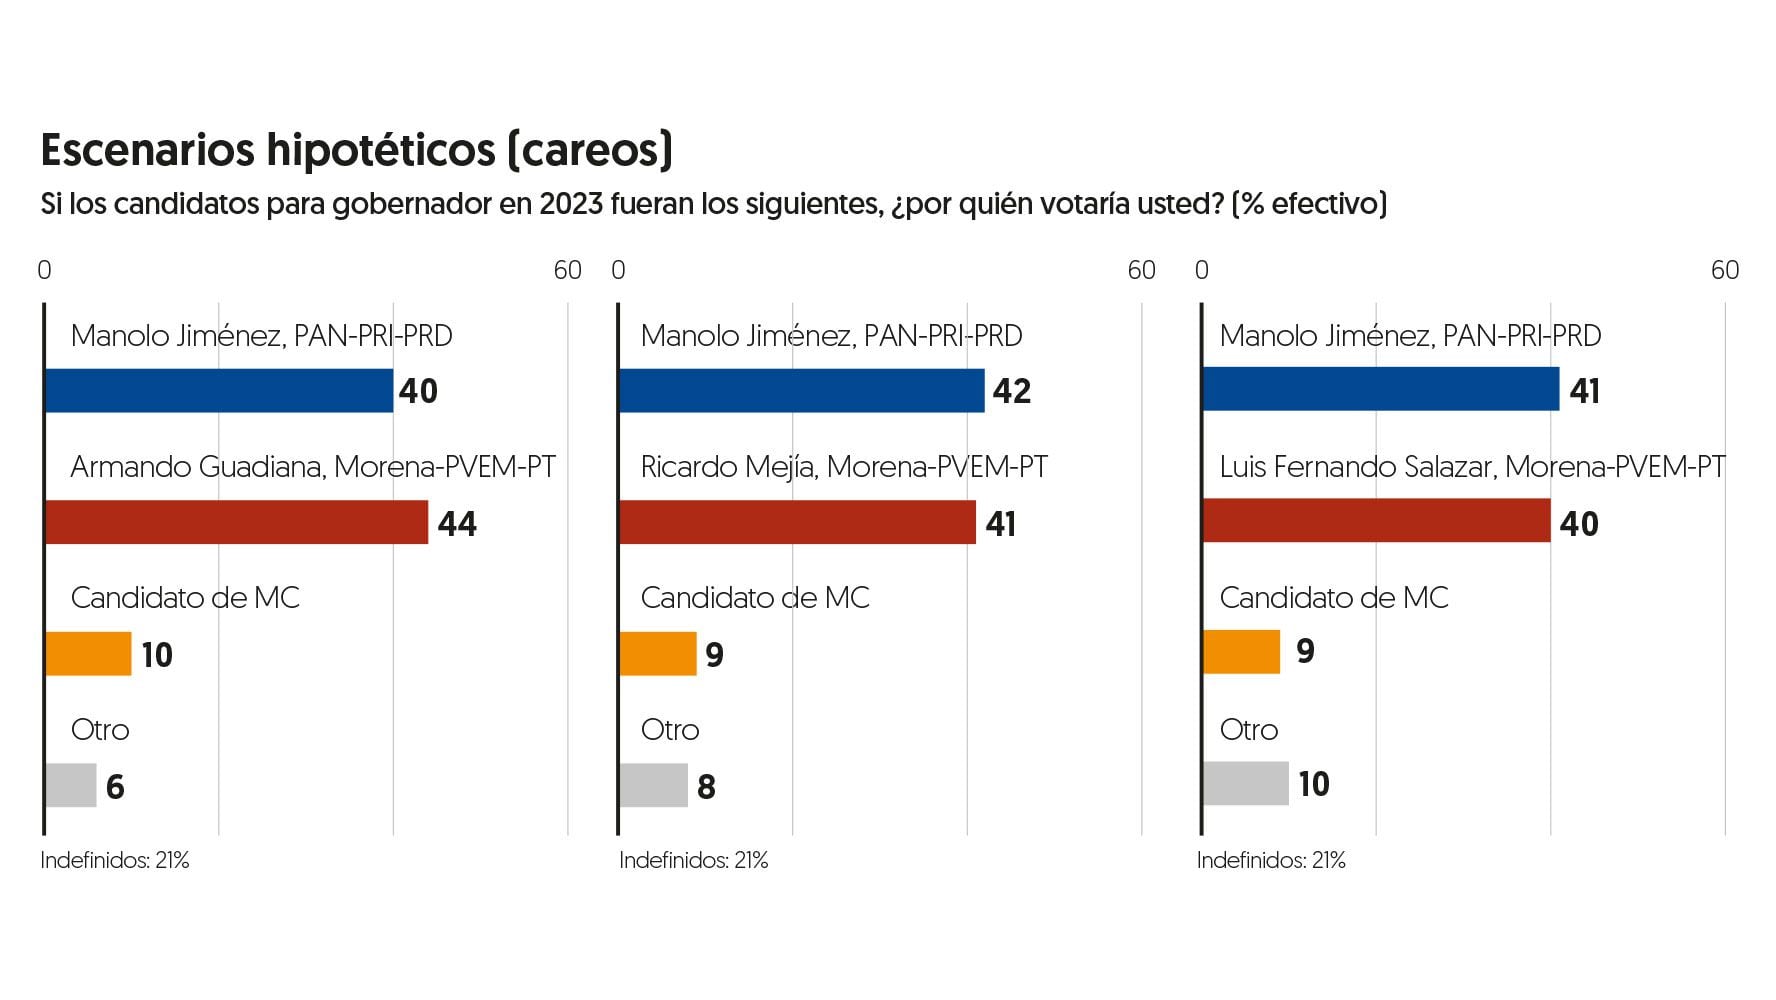 Manolo Jiménez y cualquier candidato morenista tienen cerrada competencia en careos hipotéticos